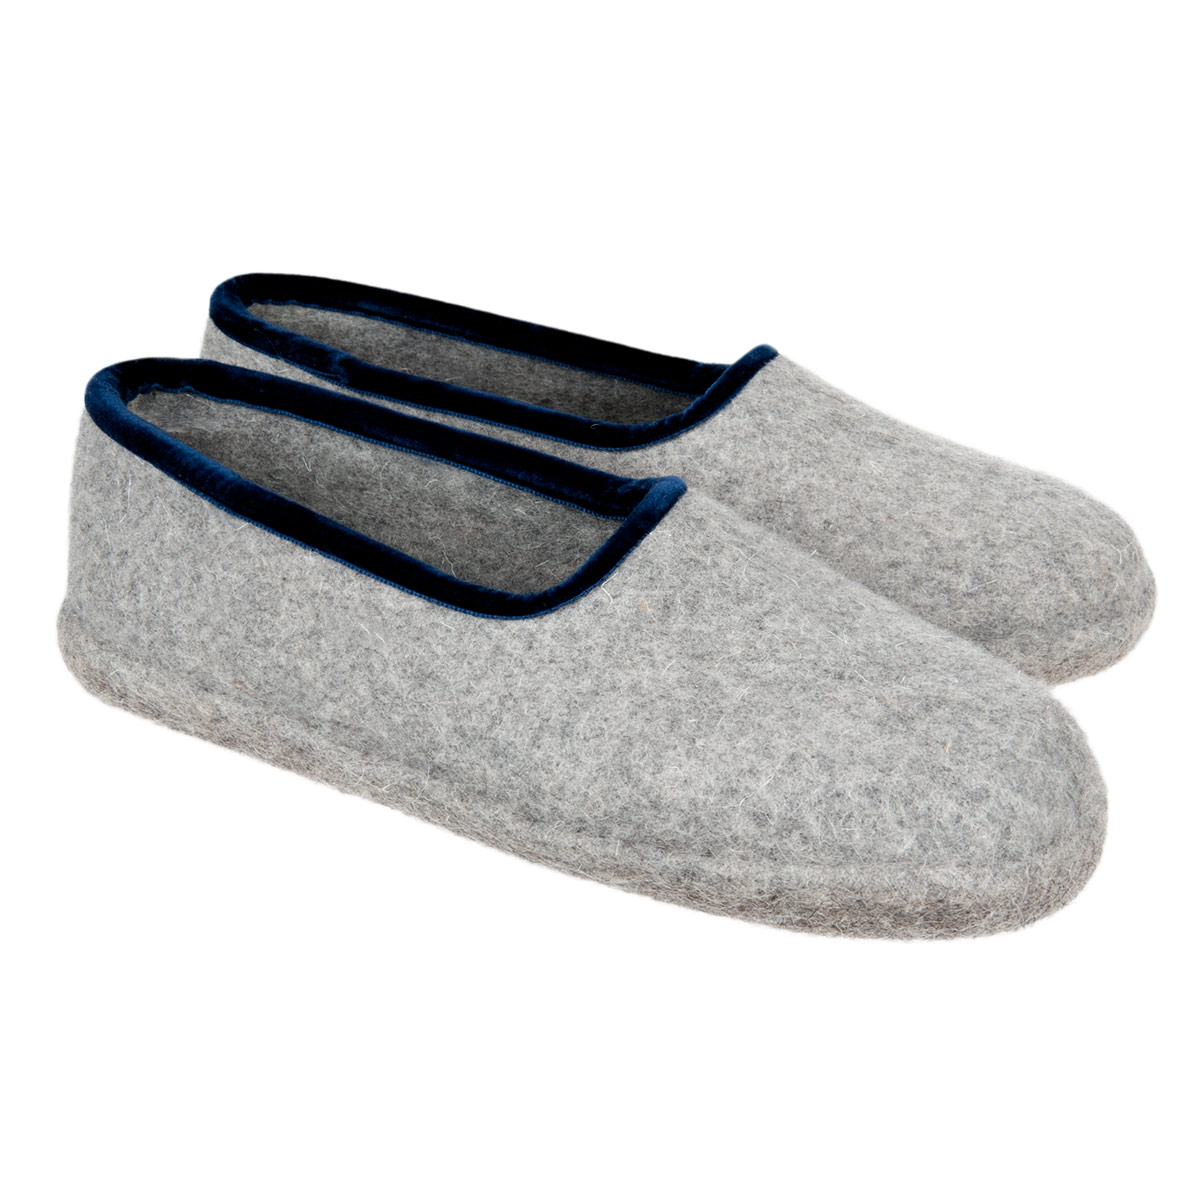 f&f slippers